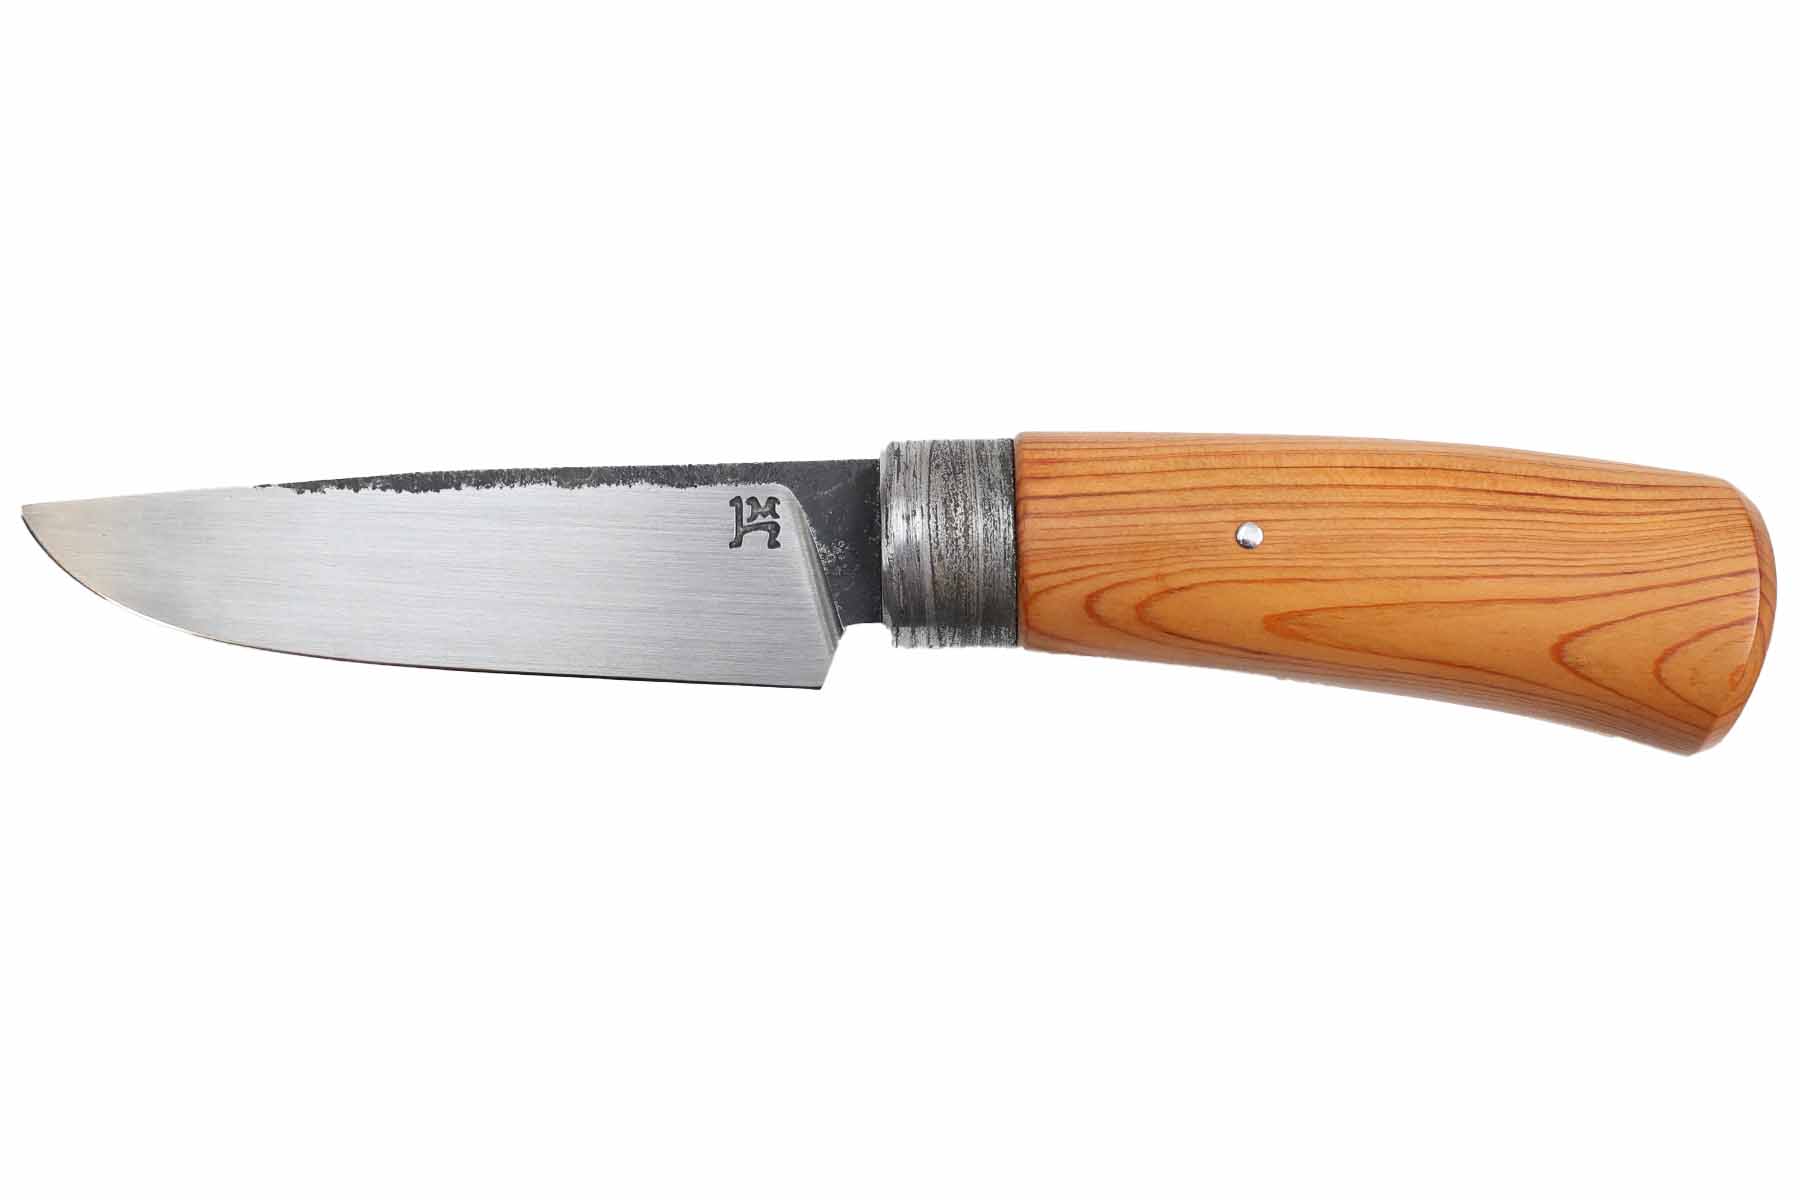 Couteau fixe artisanal par "Hugo Milesi", modèle utilitaire - If